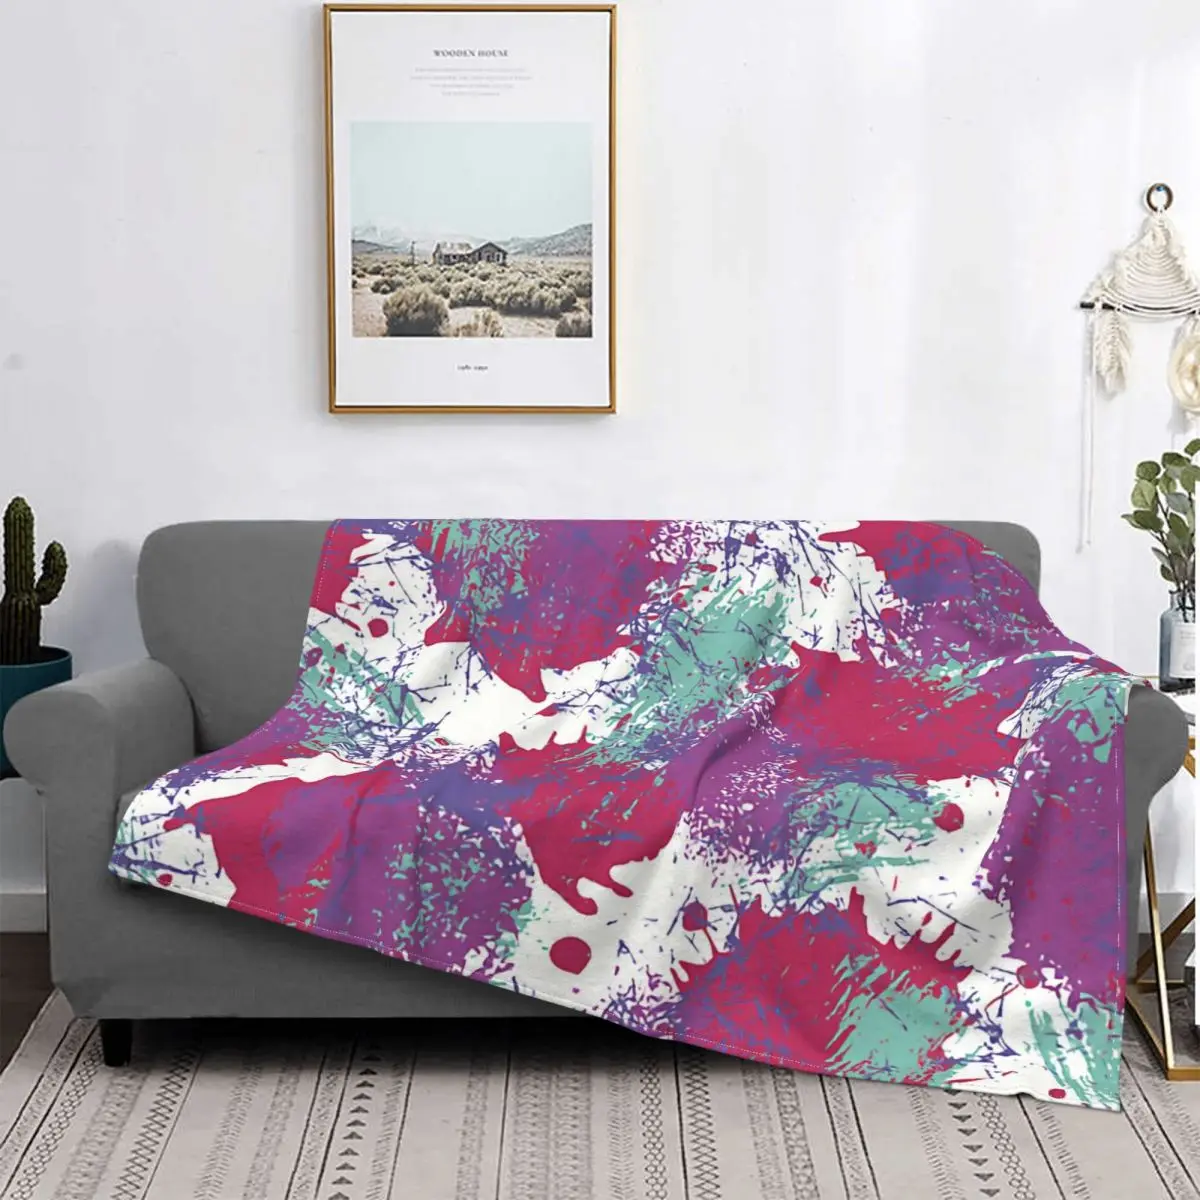 

Плед в клетку с граффити, портативное теплое одеяло в современном стиле, с цветным рисунком, кораллового флиса, домашнее покрывало